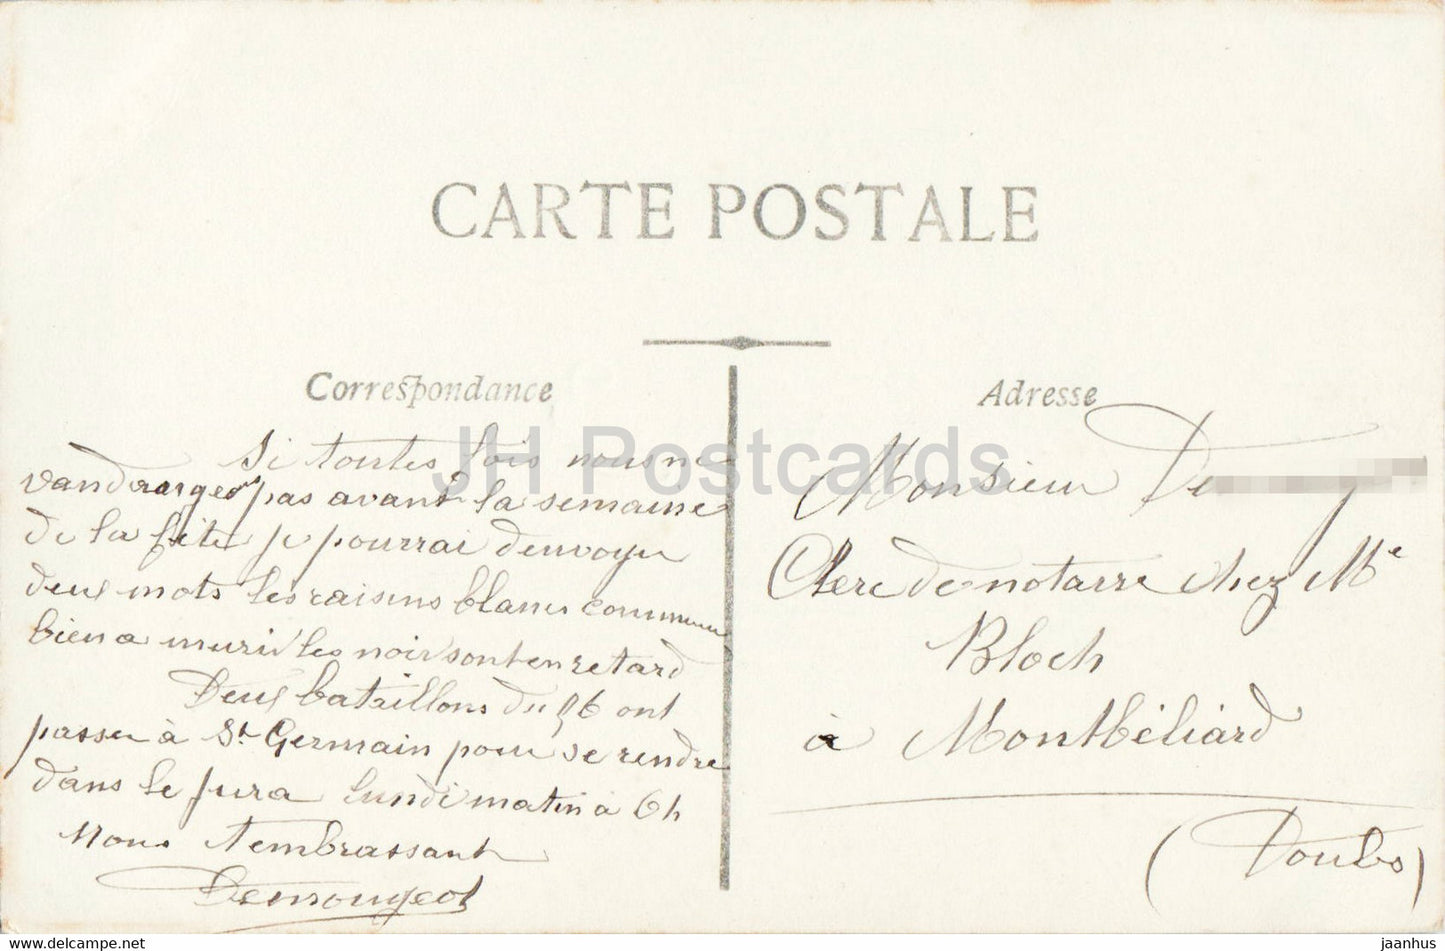 Carte de voeux - Bonne Fête - fleurs - œillet - 2146 - ASTOR - carte postale ancienne - France - occasion